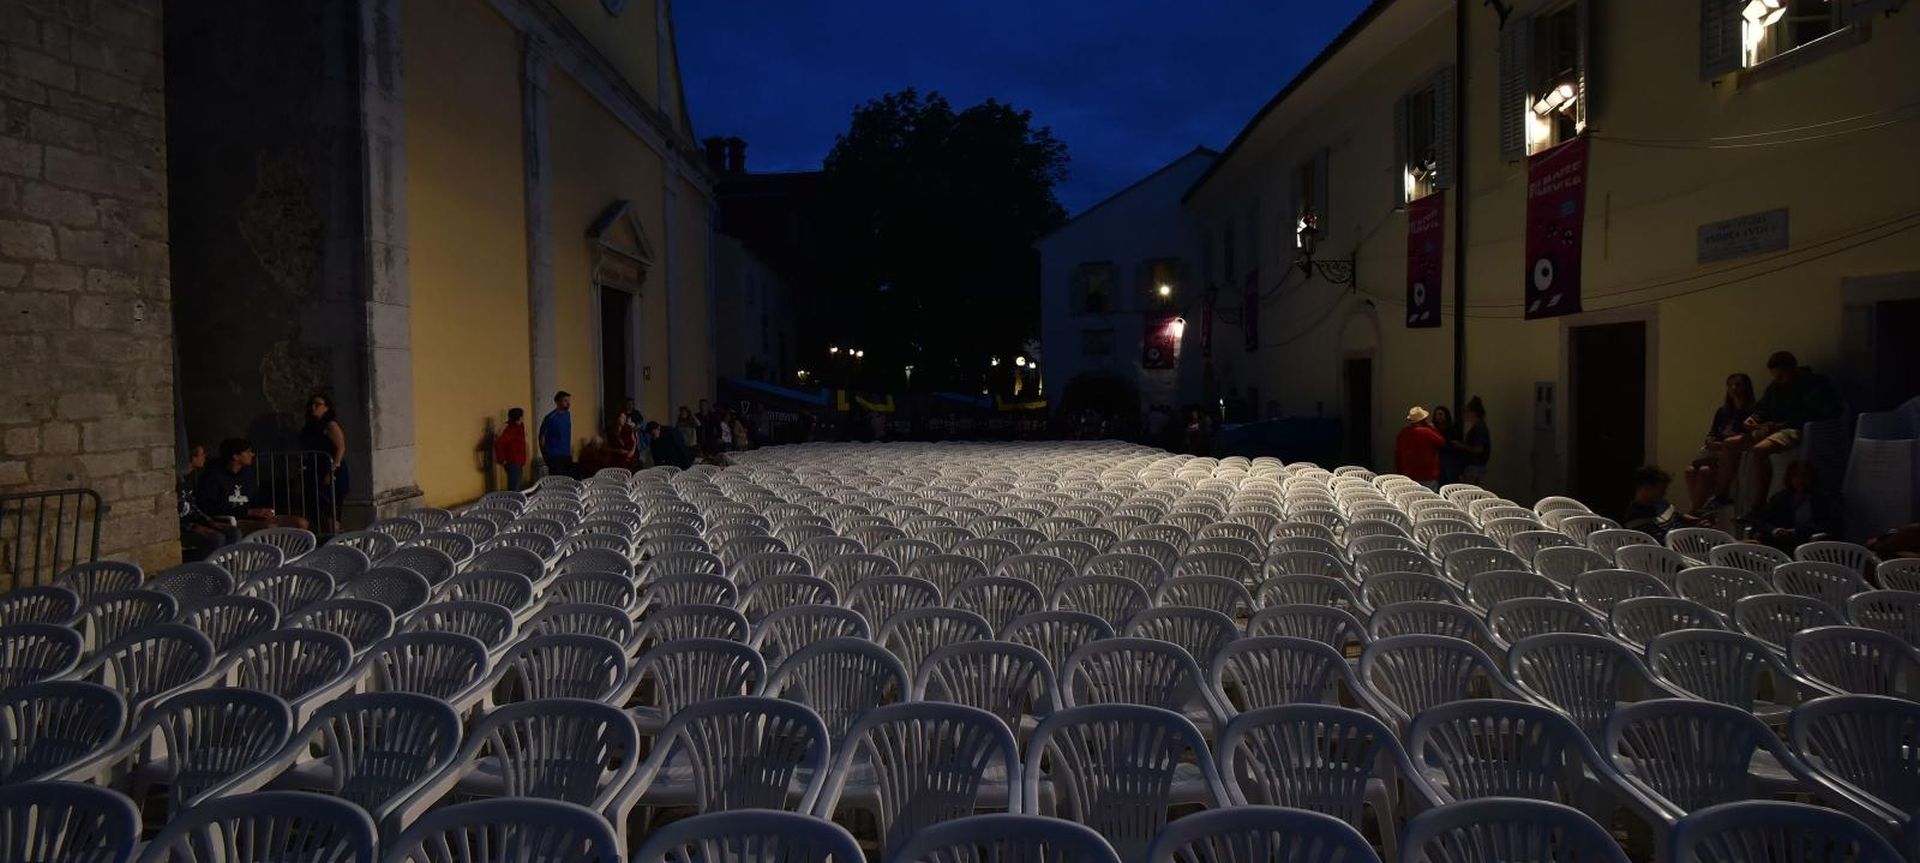 25.07.2017., Motovun - Svecano otvoren 20. Motovunski filmski festival koji ce trajati do 29. srpnja.
Photo: Dusko Marusic/PIXSELL